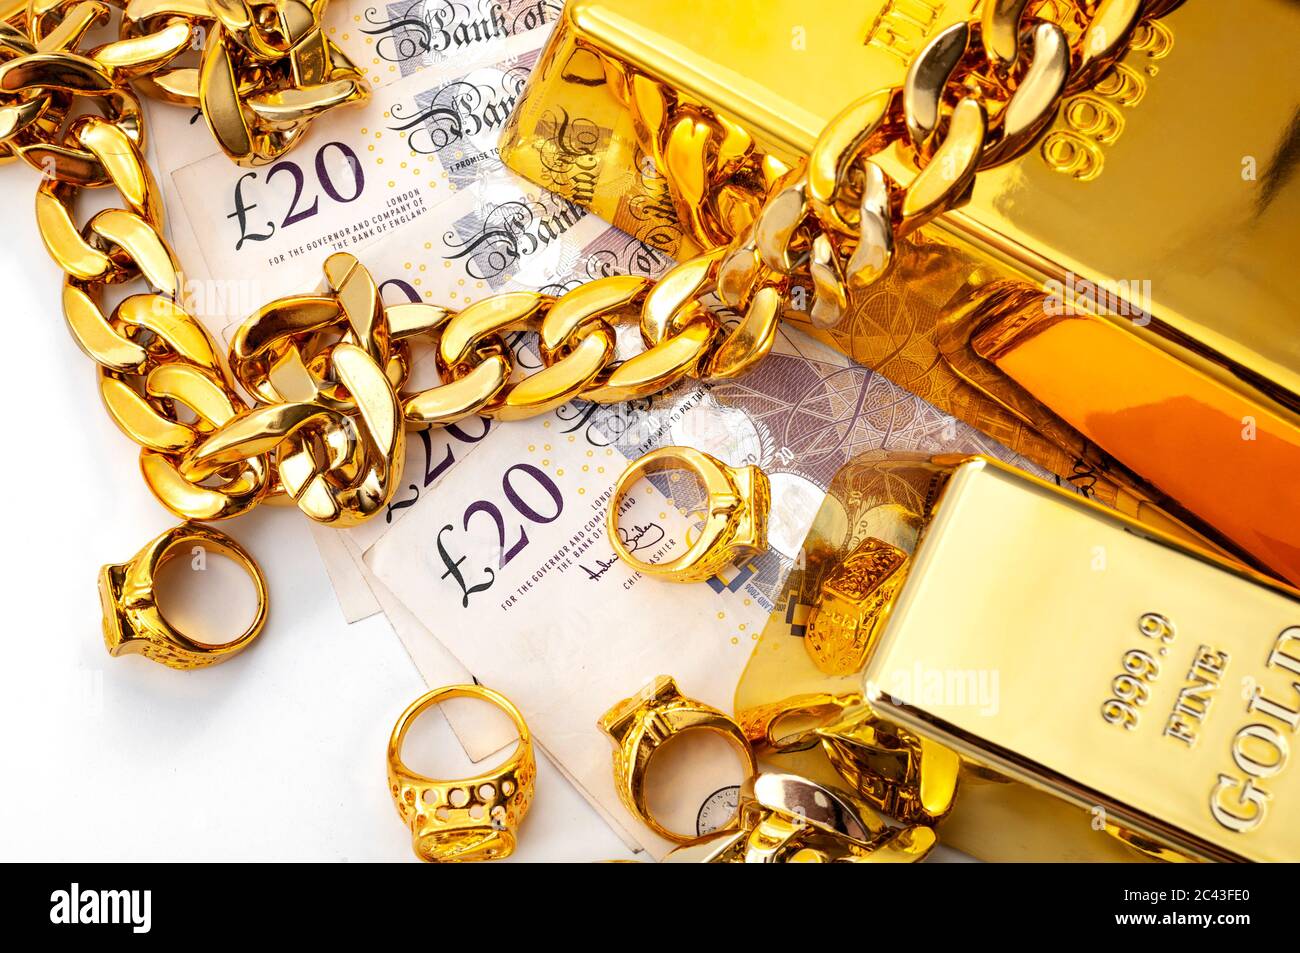 Compratore di gioielli, negozio di pedine e acquistare e vendere metalli preziosi concept tema con pila di denaro in sterline britanniche, anelli d'oro, bracciale collana e oro Foto Stock